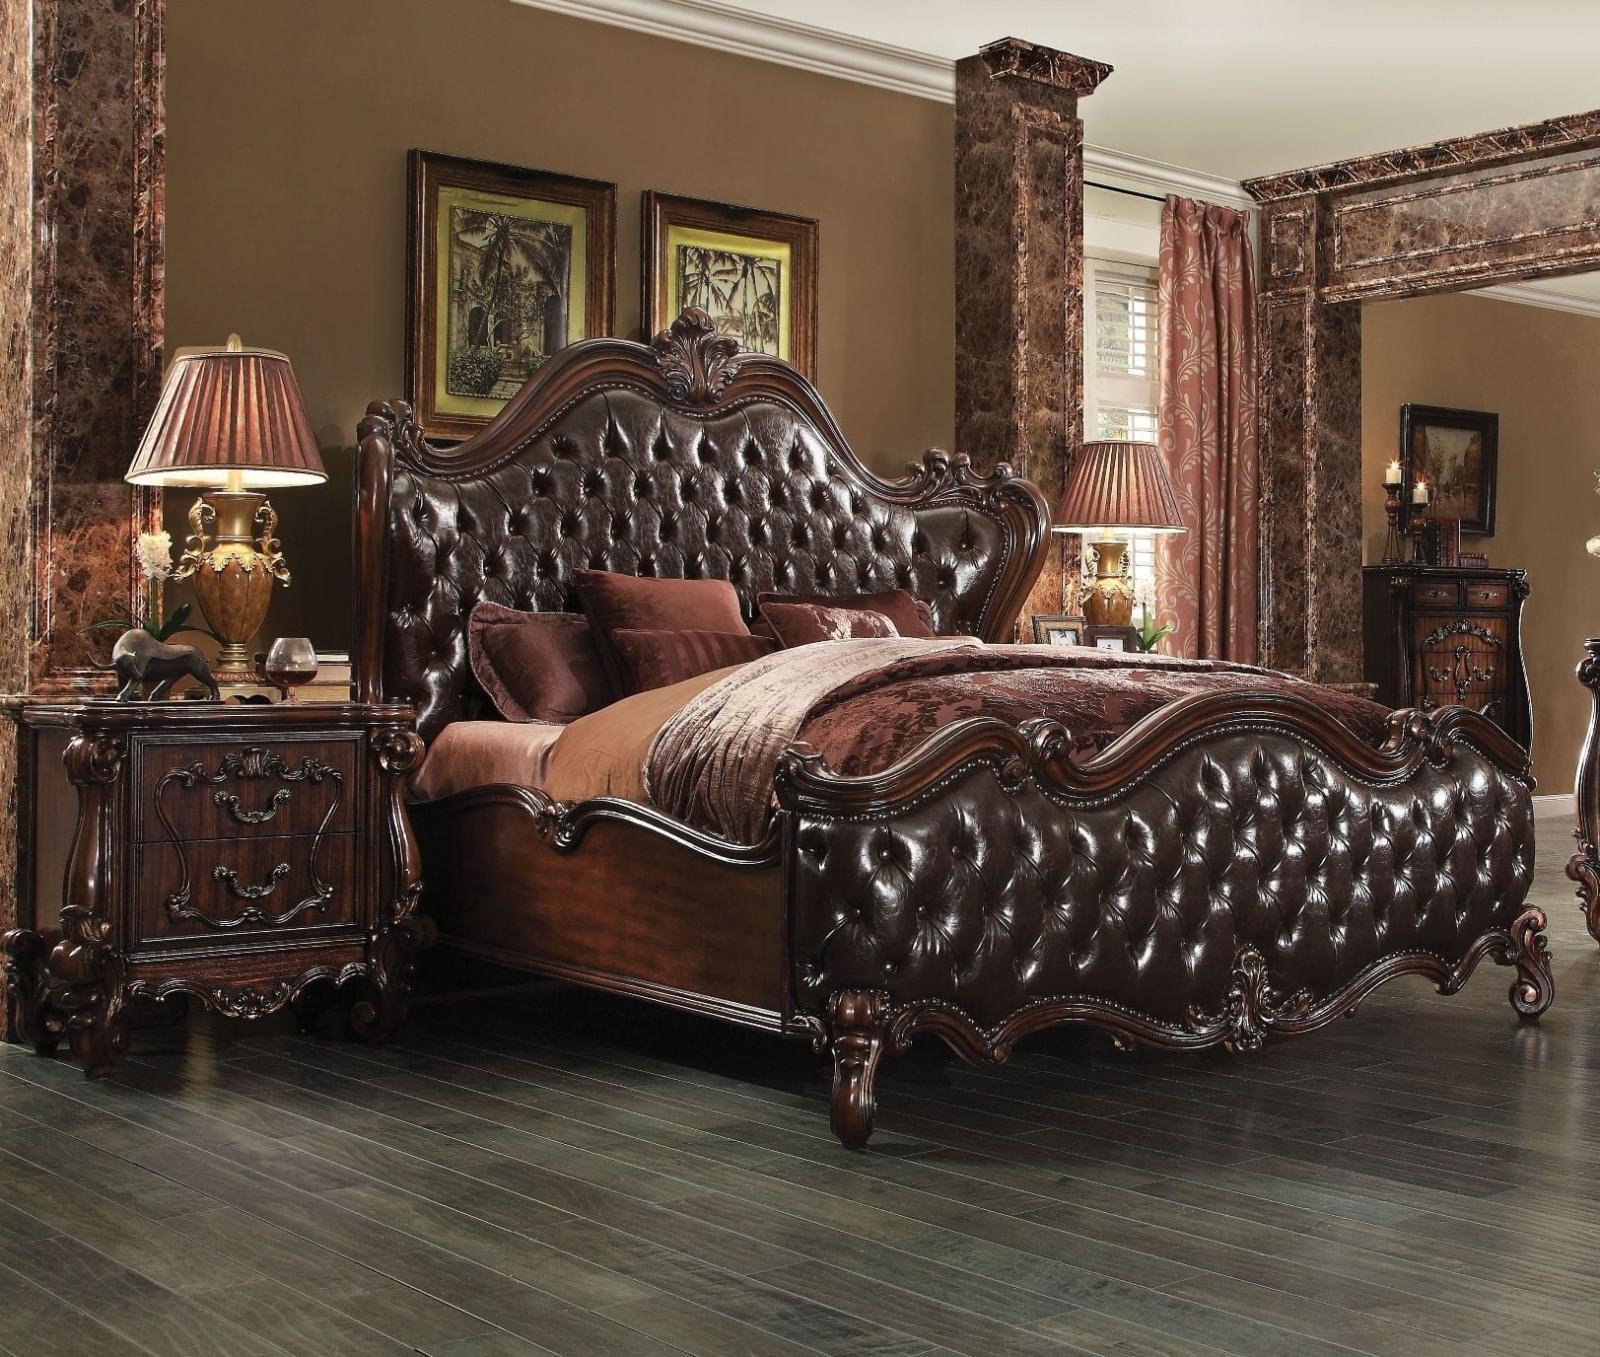 

    
Shine King Upholstered Standard Bedroom Set 3Pcs
